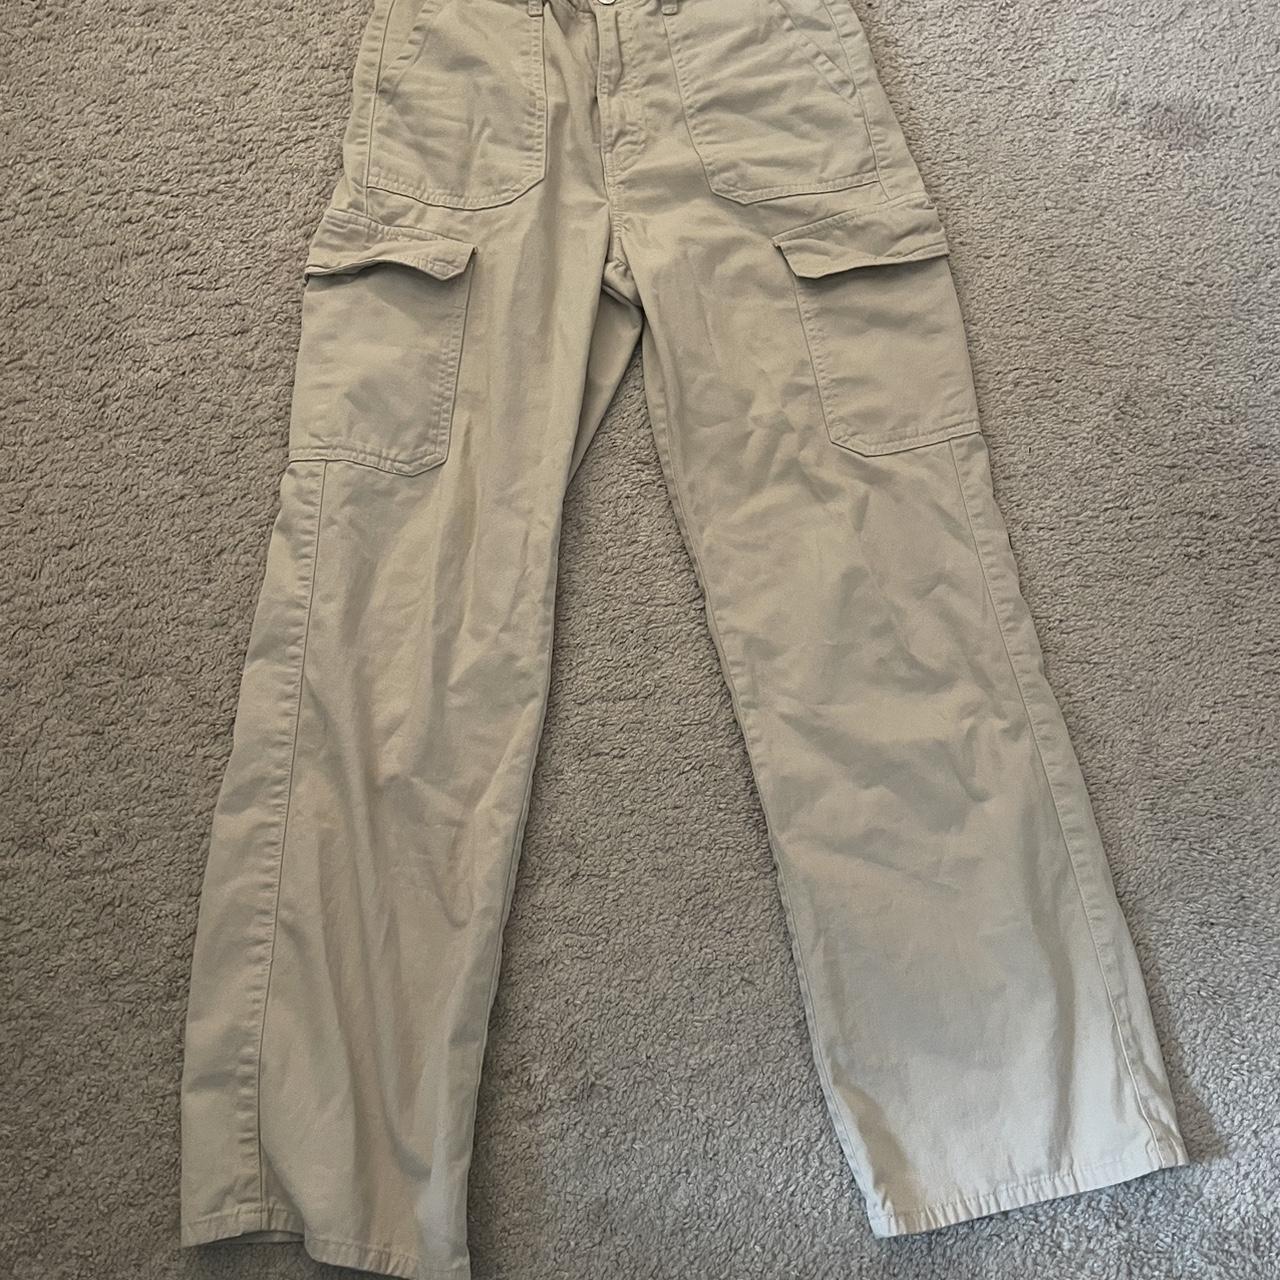 Zara beige Utility trousers / cargo / safari pants - Depop